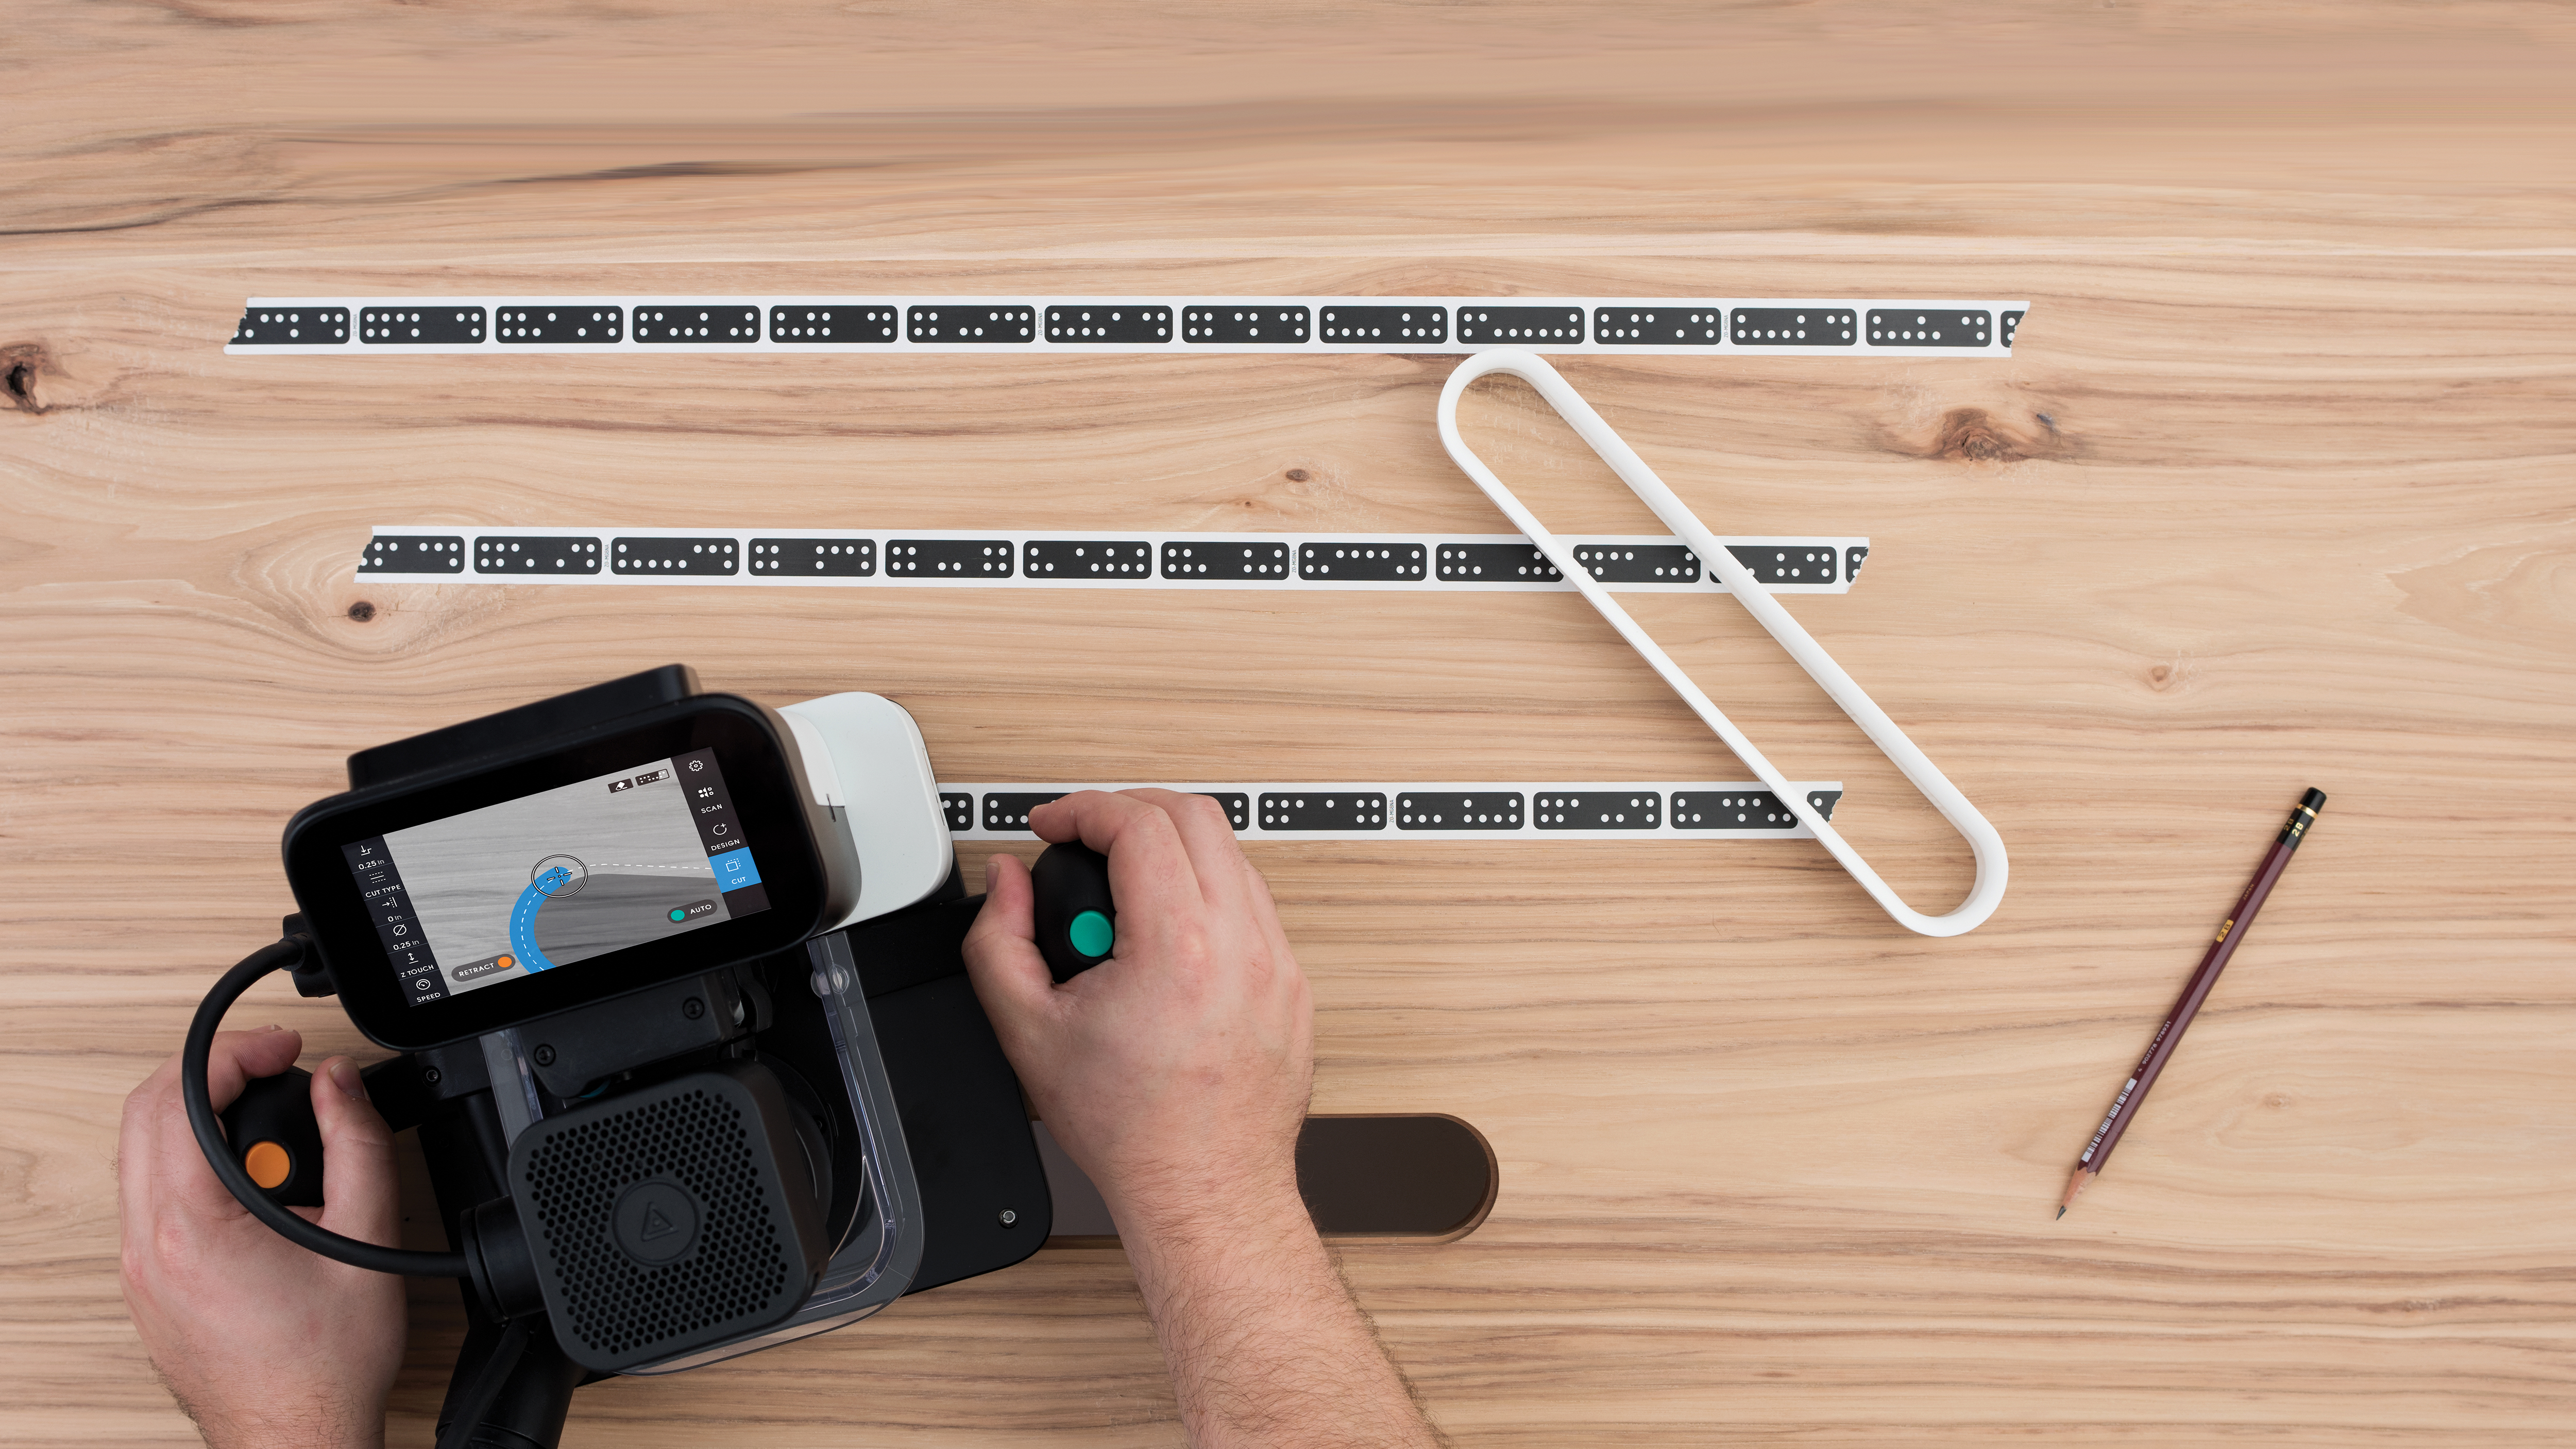 Arbeitsfläche mit dem Shaper-Tape einscannen, Design platzieren und losfahren. Der programmierte Fräspfad ist nicht auf dem Werkstück, sondern nur im Display der Origin zu sehen. Augmented Reality macht's möglich. Foto: © Shaper Tools GmbH